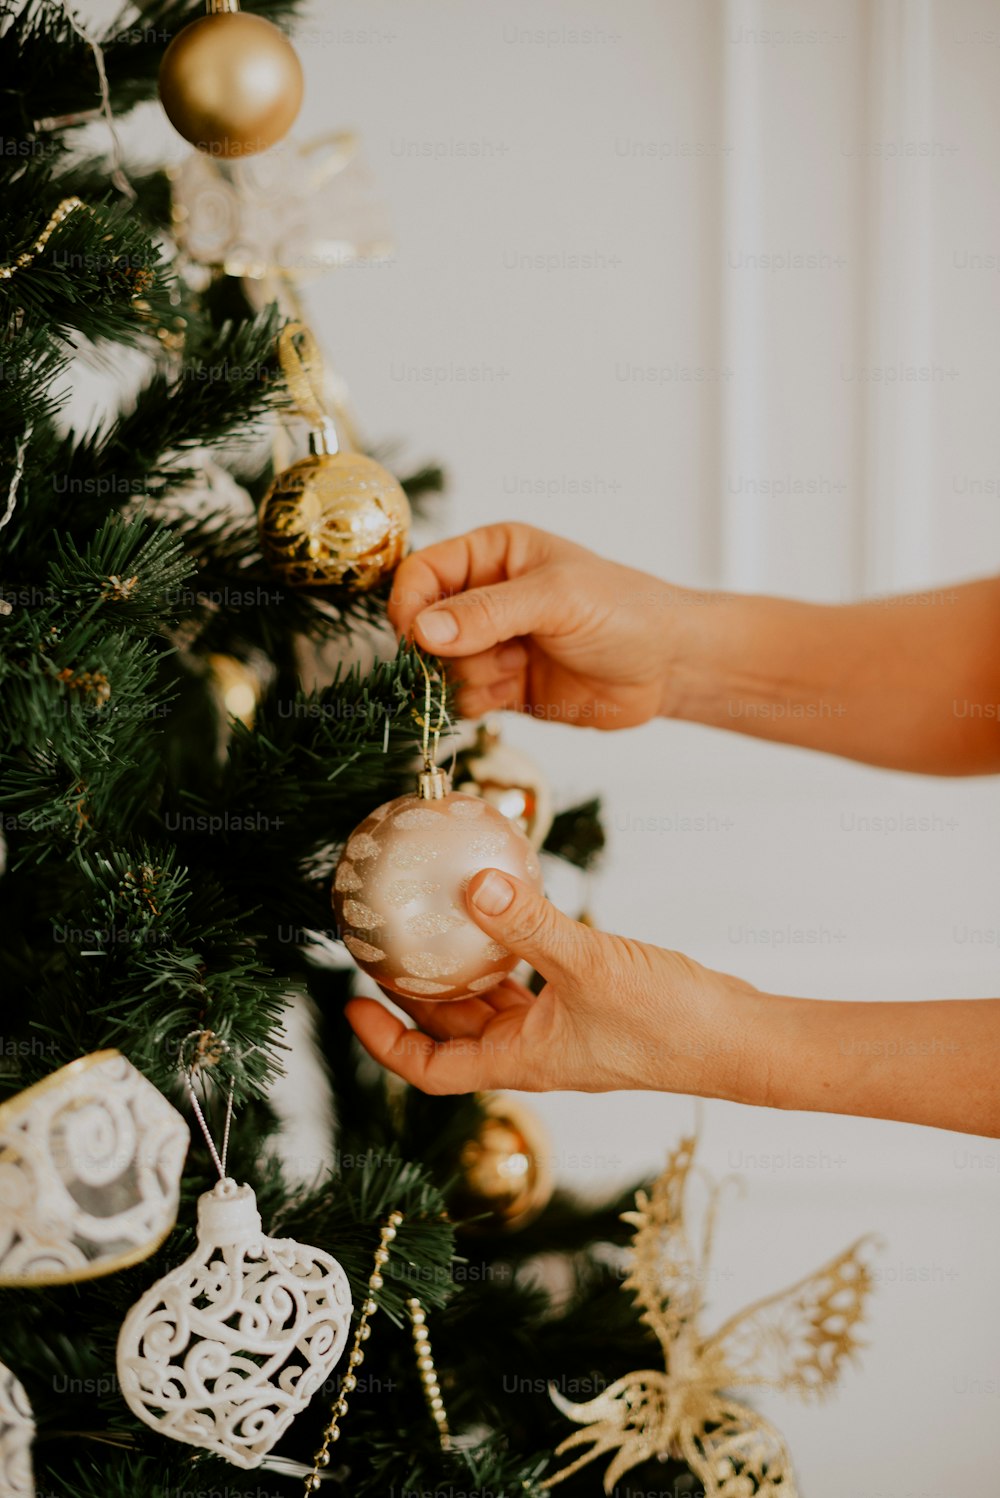 Una persona decorando un árbol de Navidad con adornos